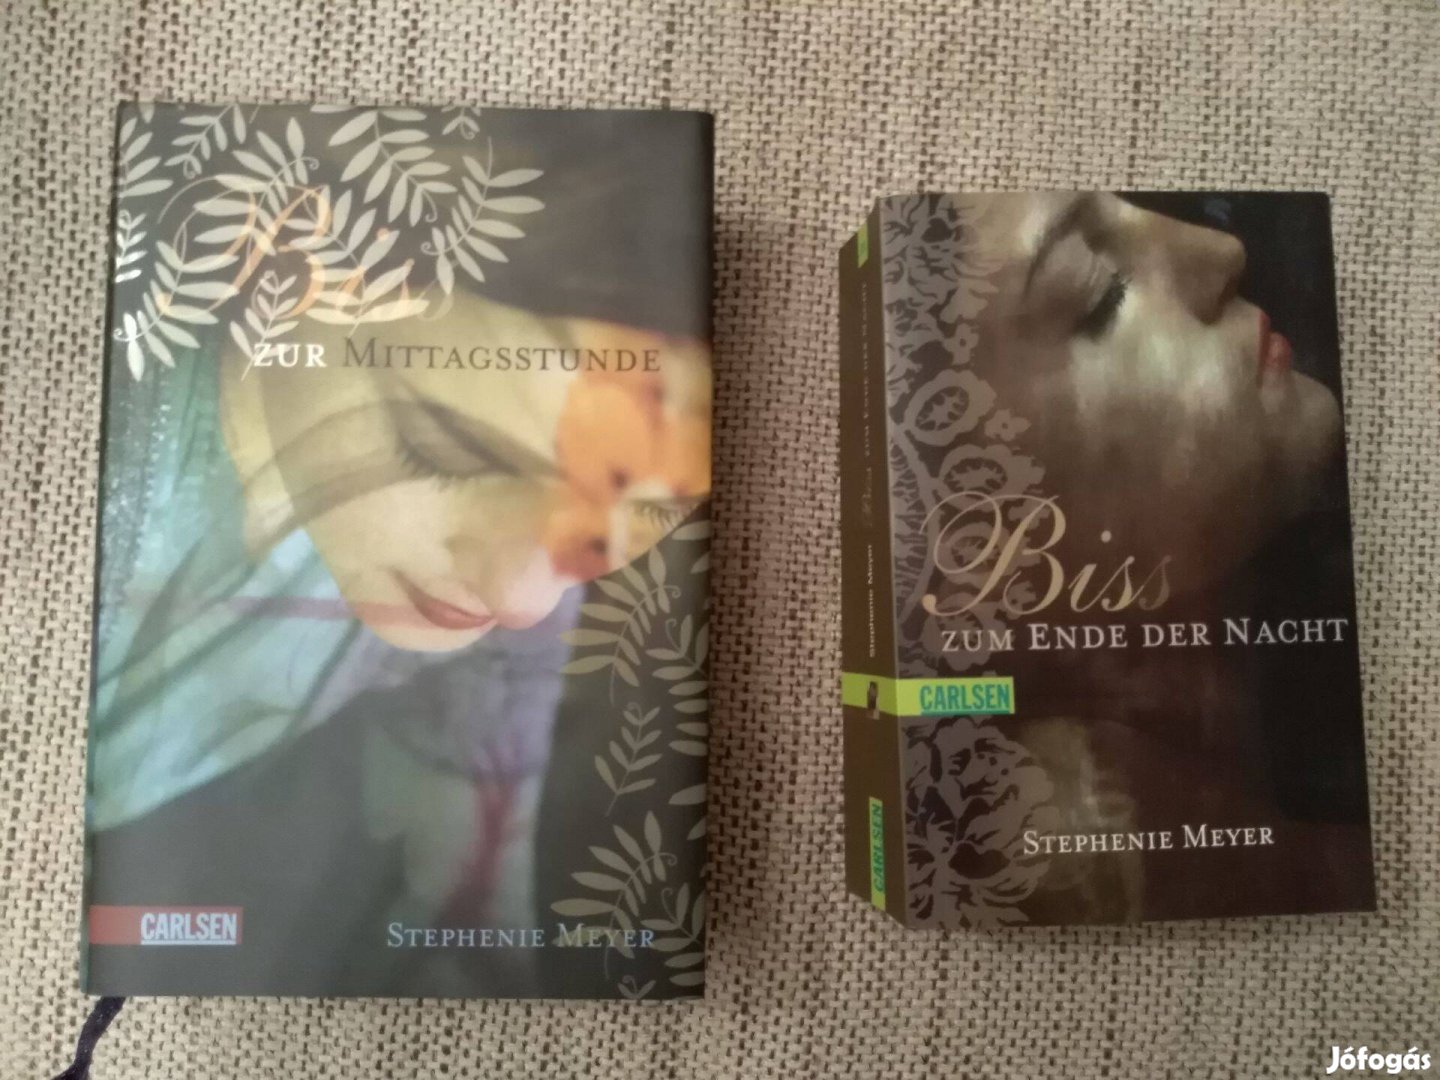 Stephenie Meyer: Alkonyat - németül